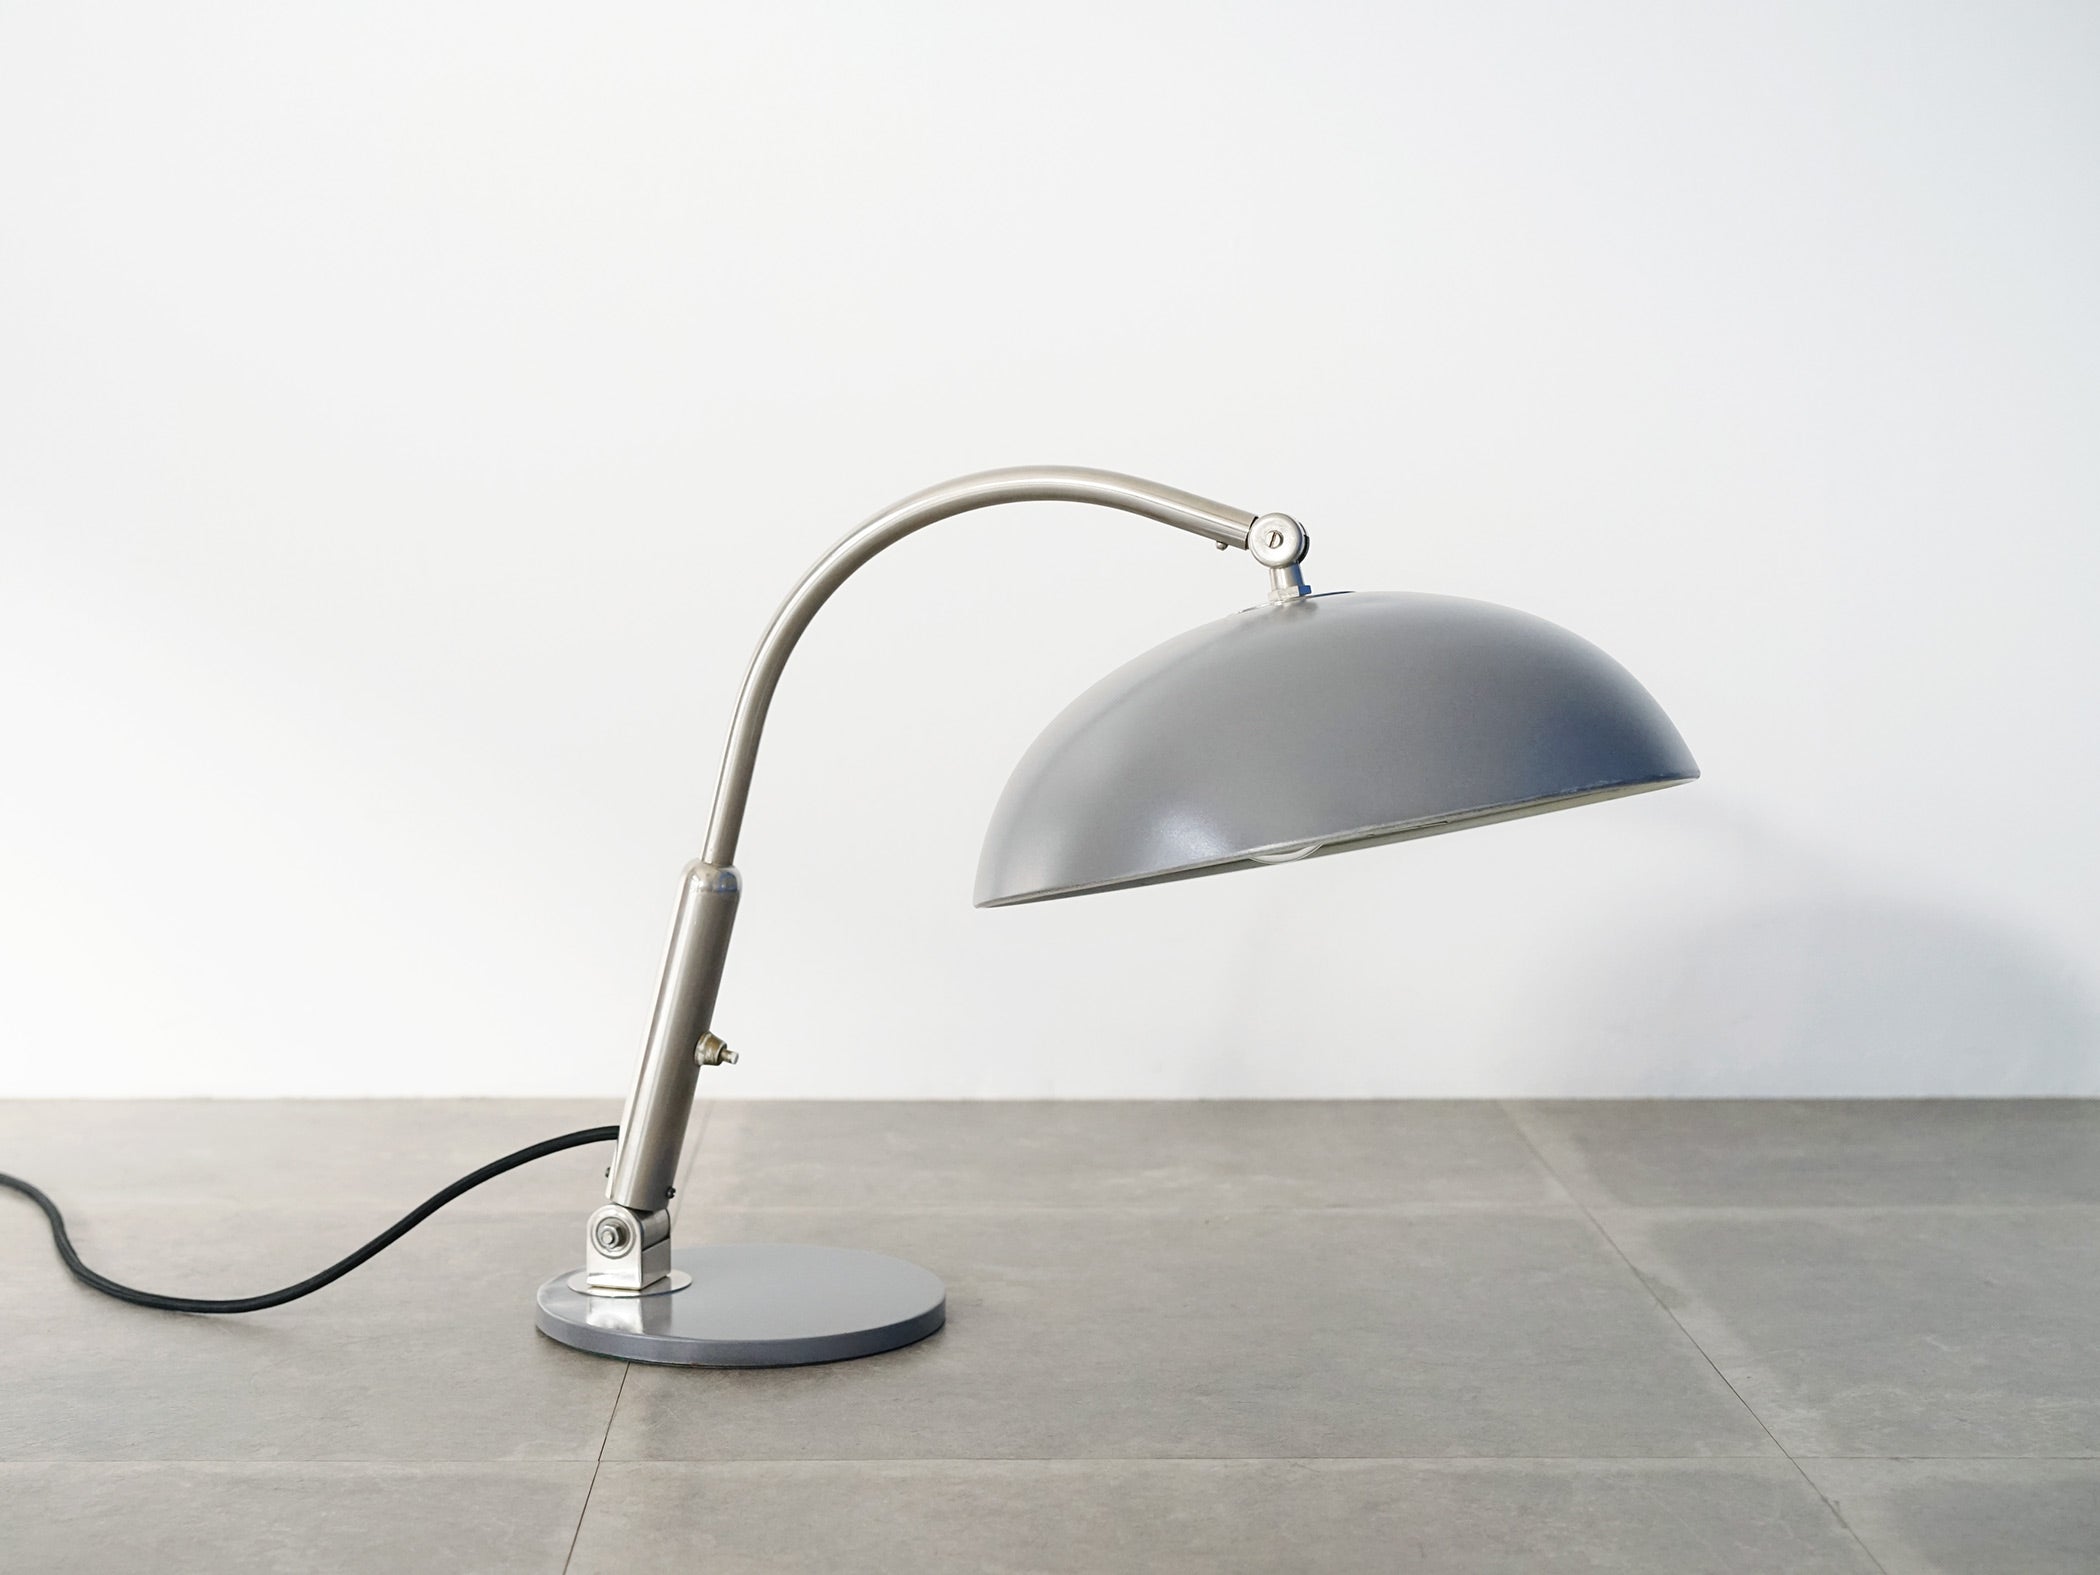 ヘルマンブスケット スタンドライト オランダのインテリア Herman Busquet Adjustable Table lamp